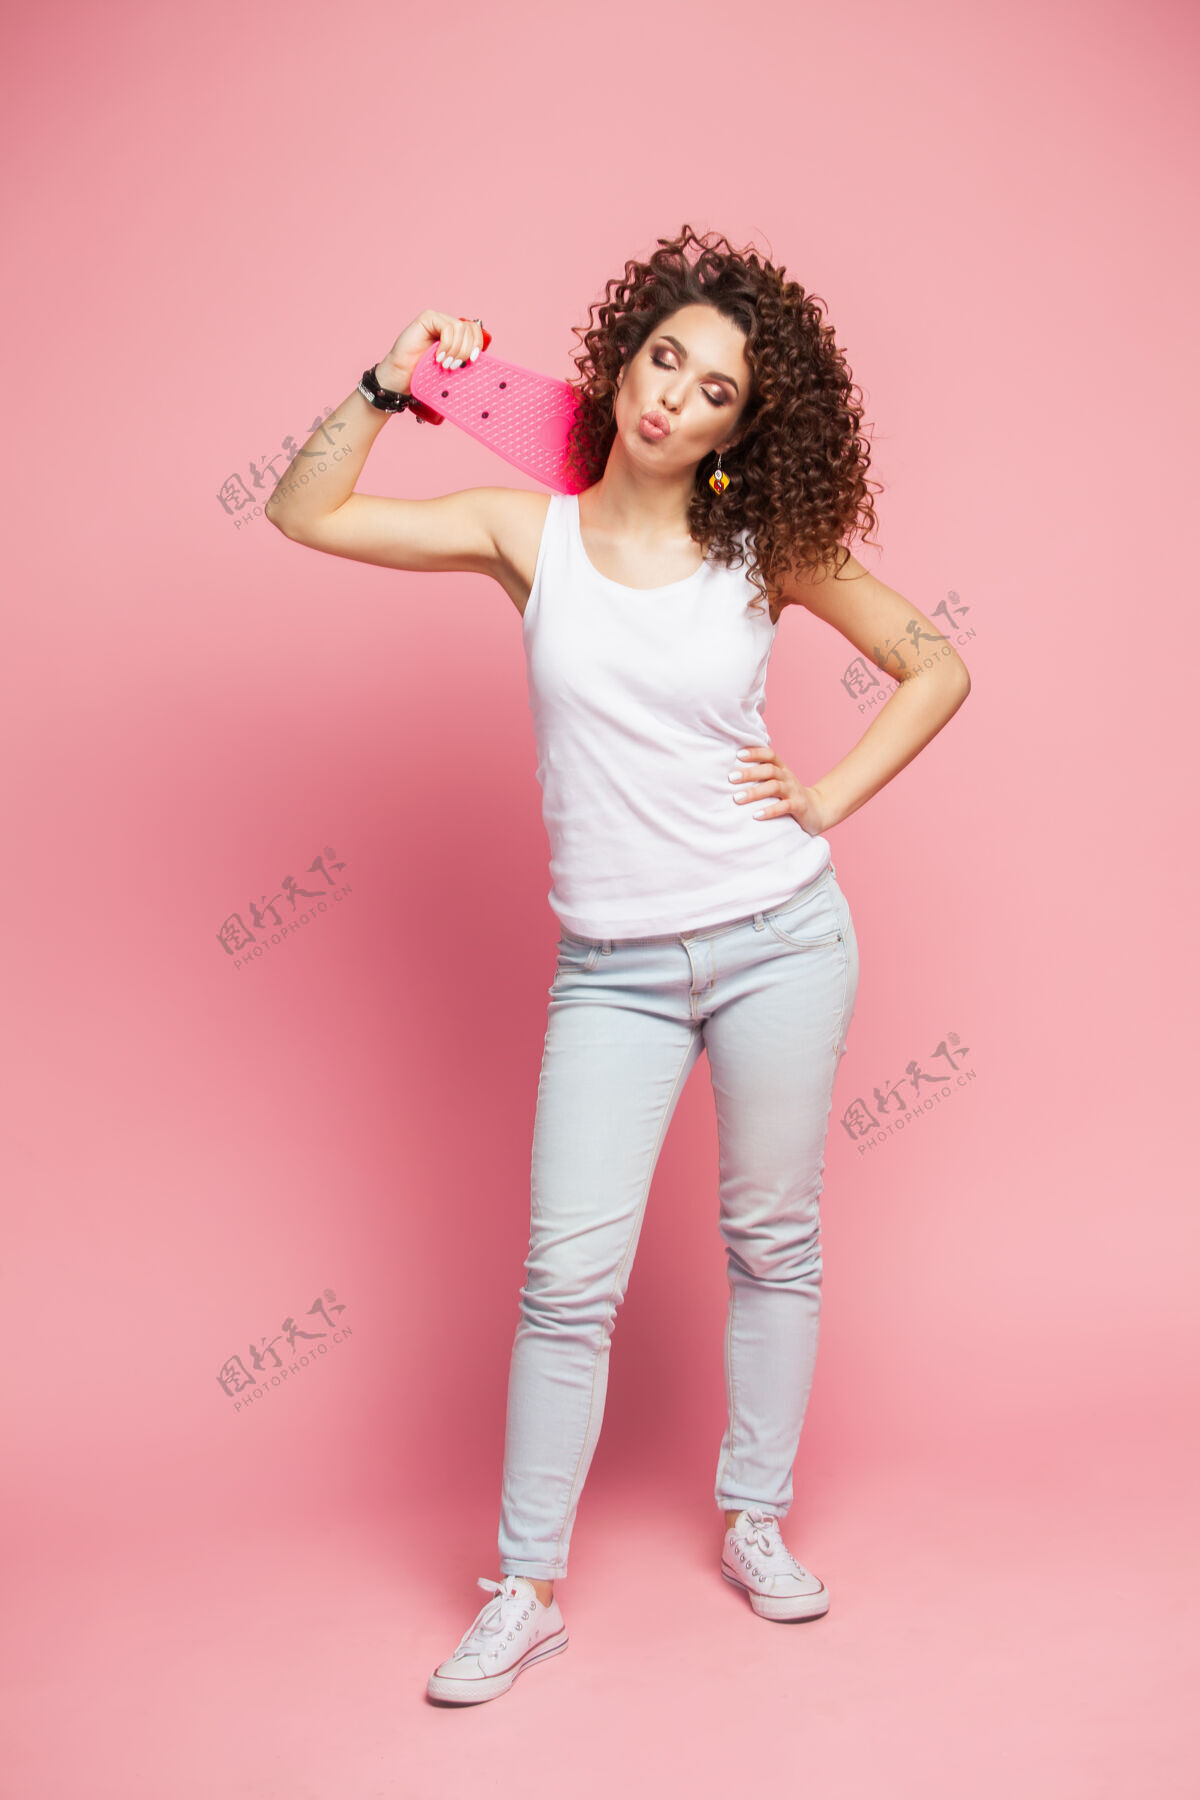 女性全高的搞笑时髦女孩与粉红色长板超过粉红色长板运动鞋短裤